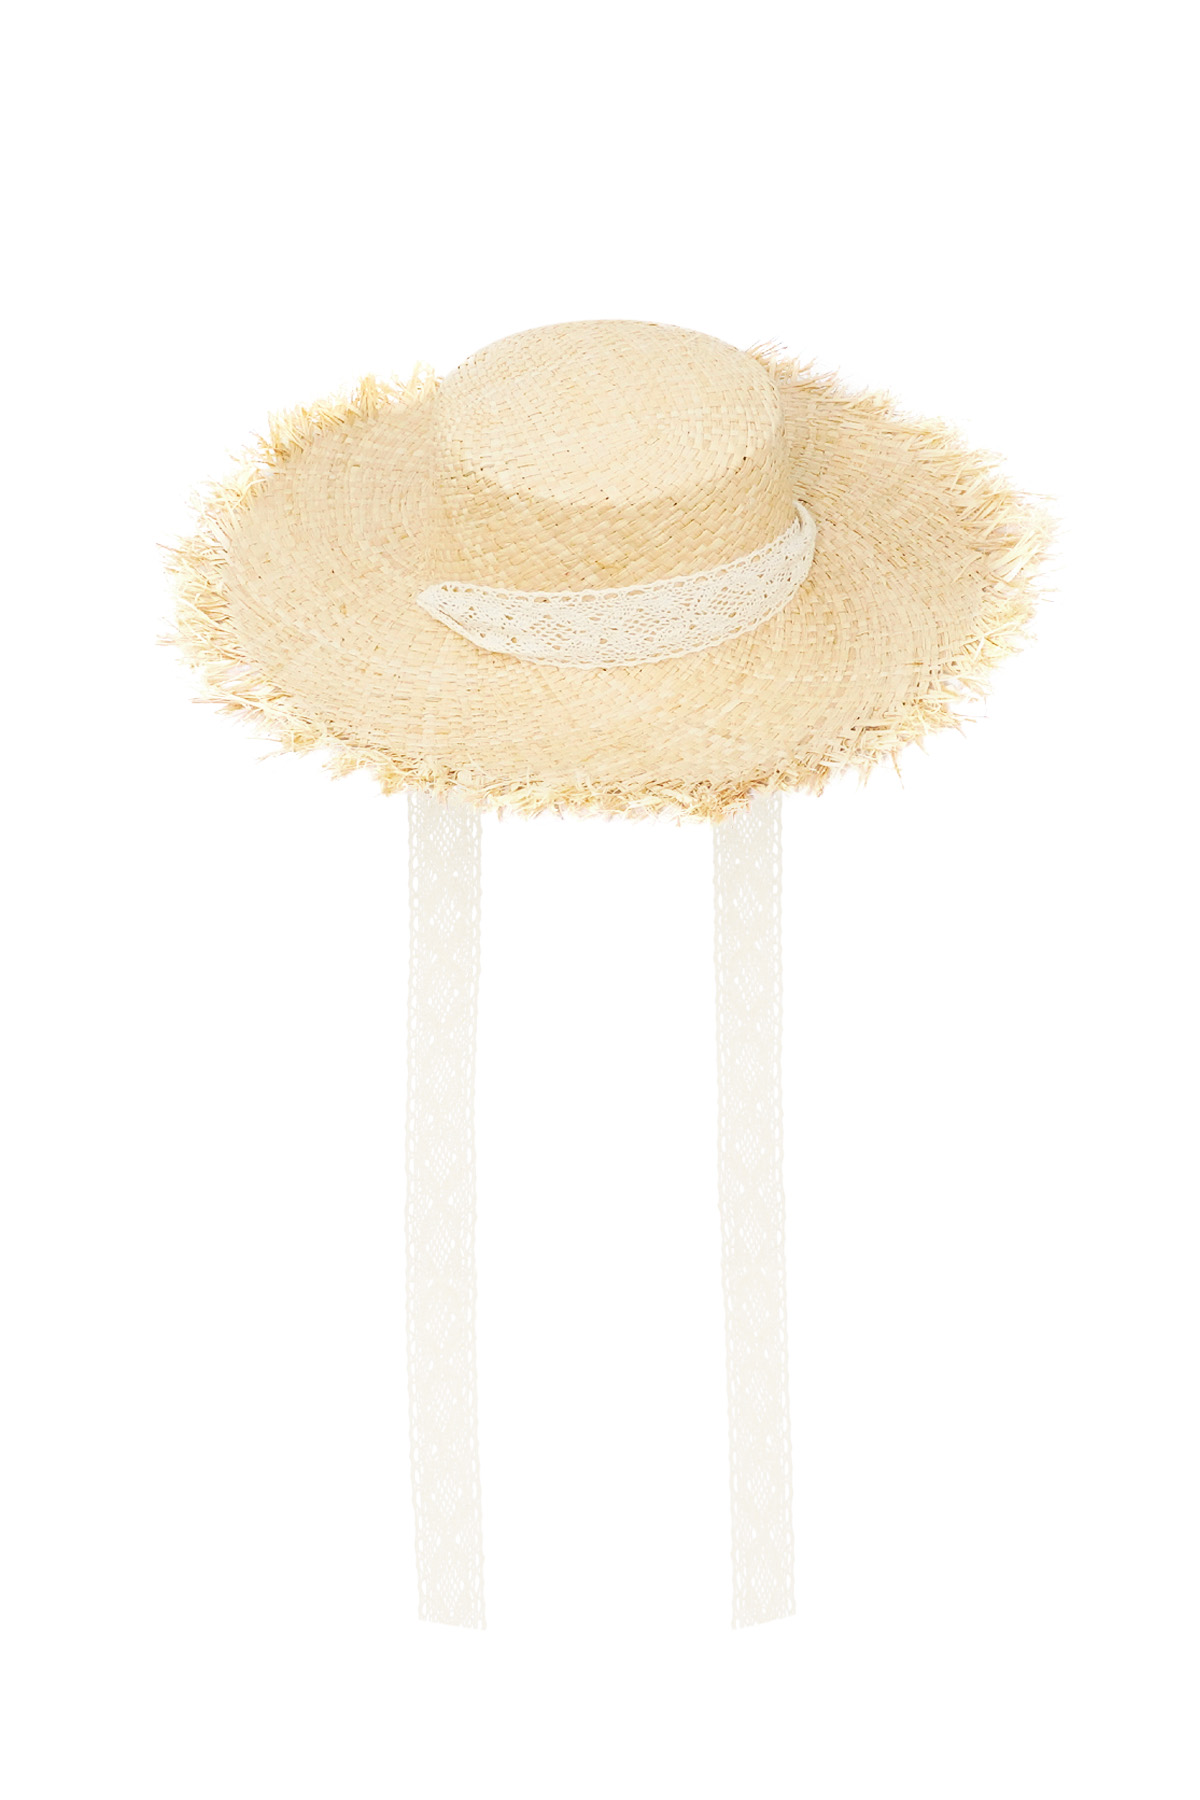 Sombrero estilo playero - blanco roto h5 Imagen6